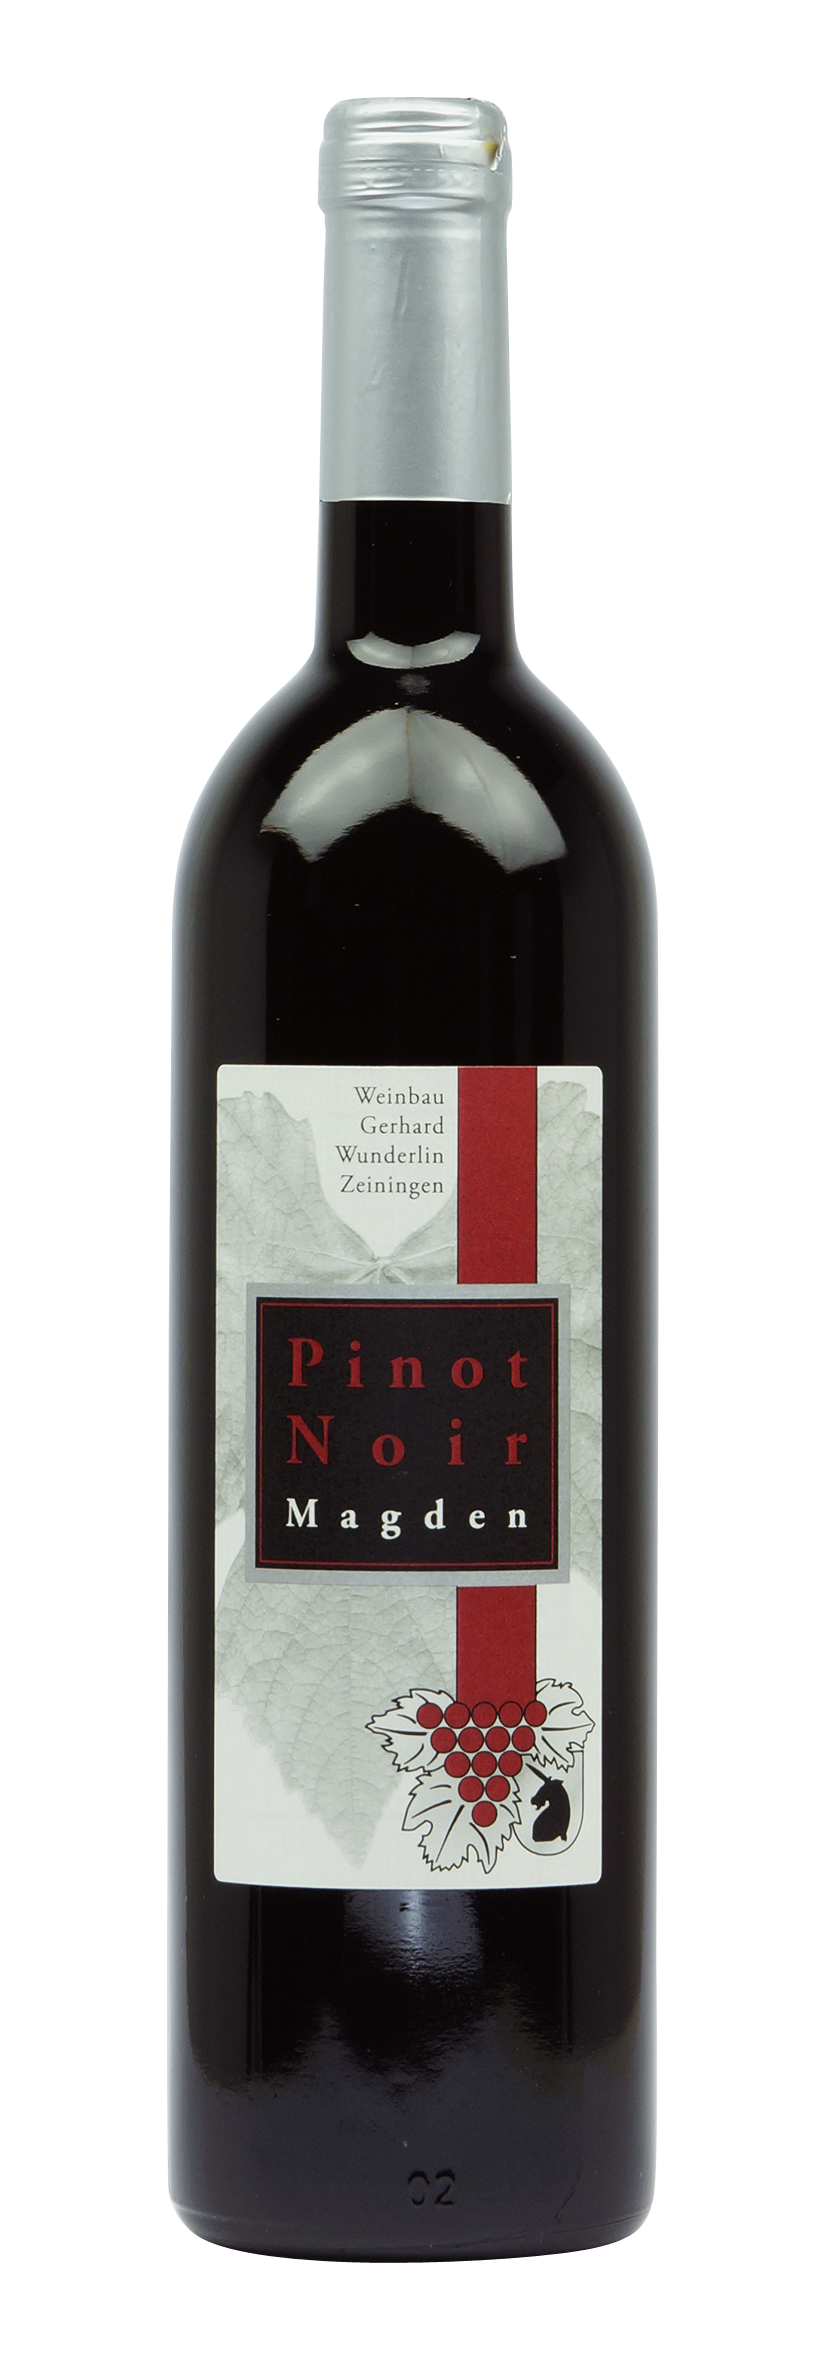 Aargau AOC Pinot Noir Magden Lanzenberg 2017